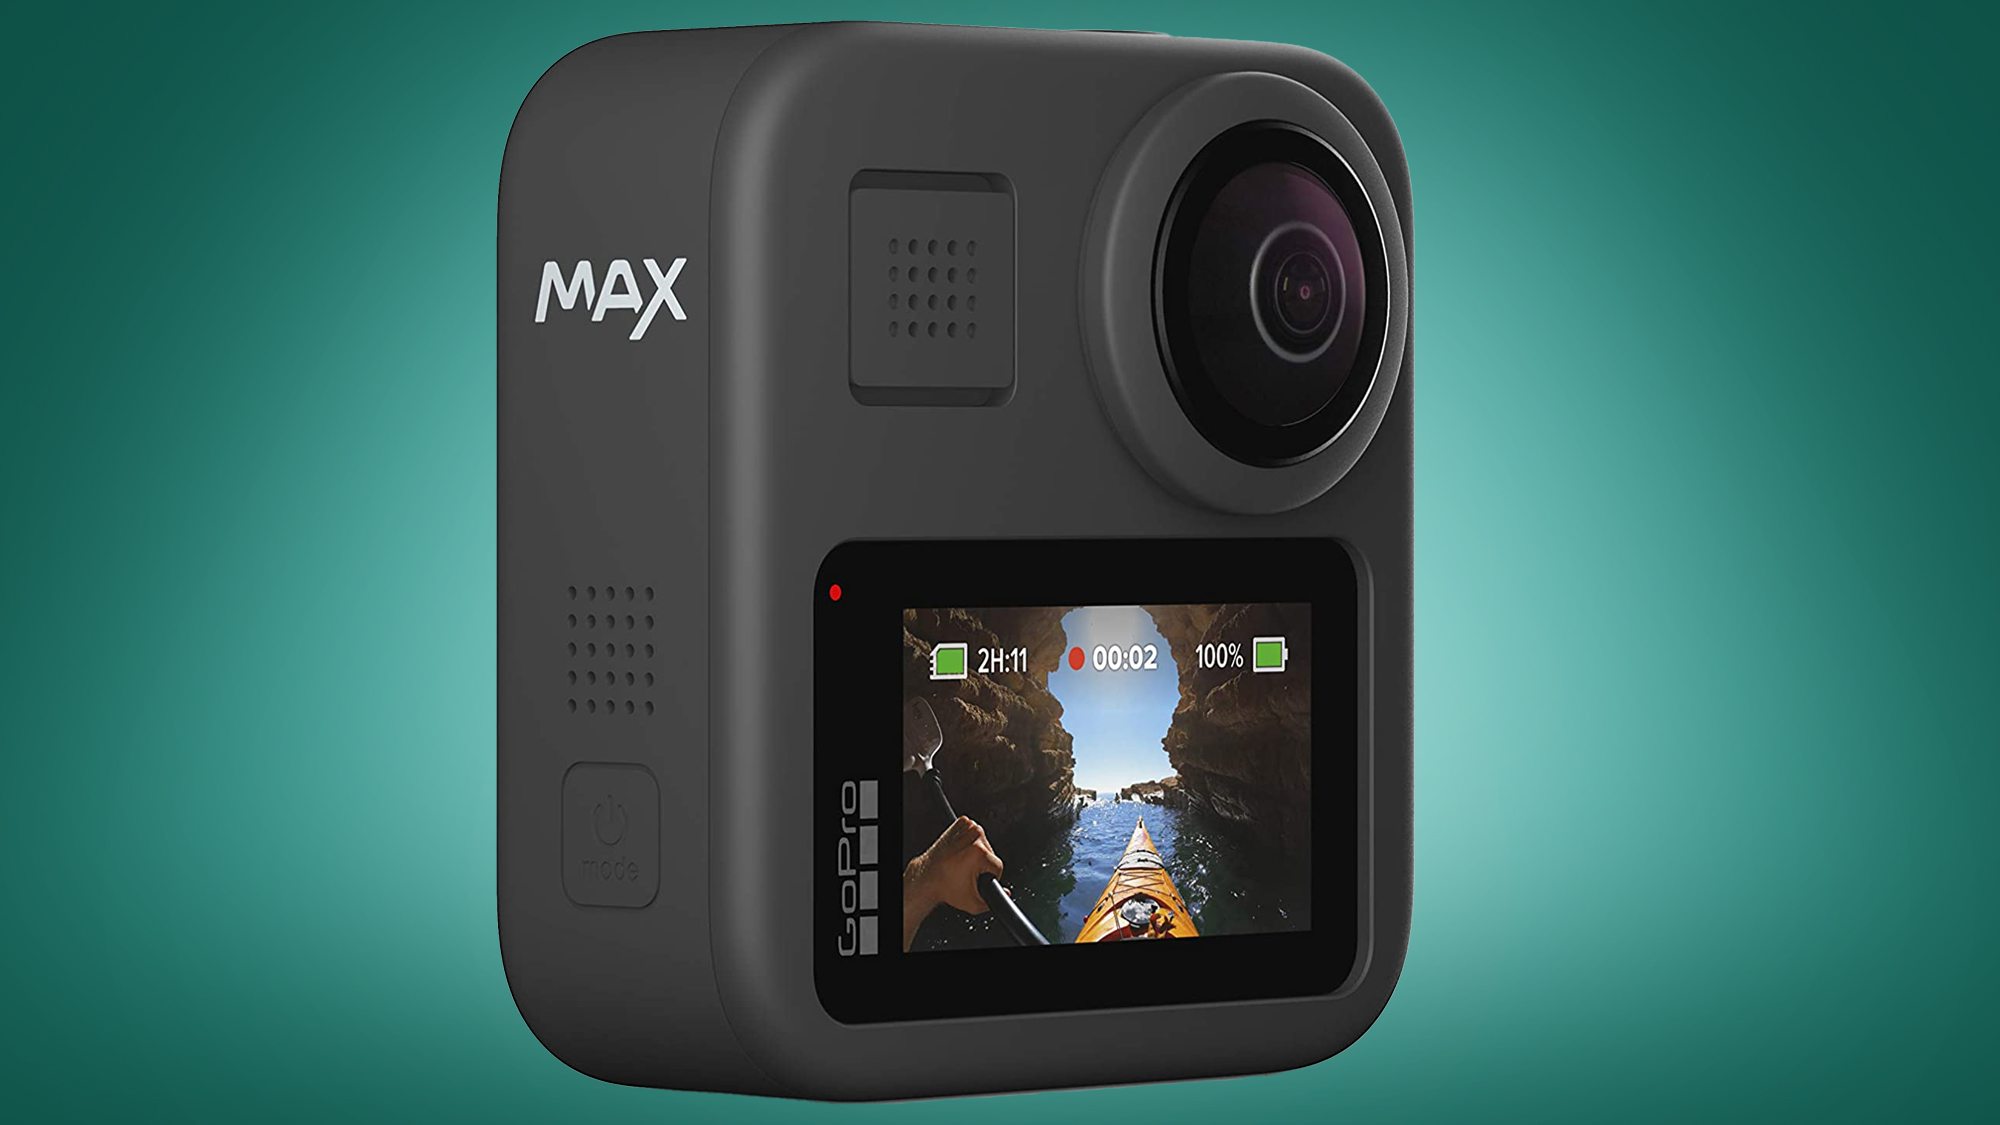 GoPro Камера Max 360 на зеленом фоне